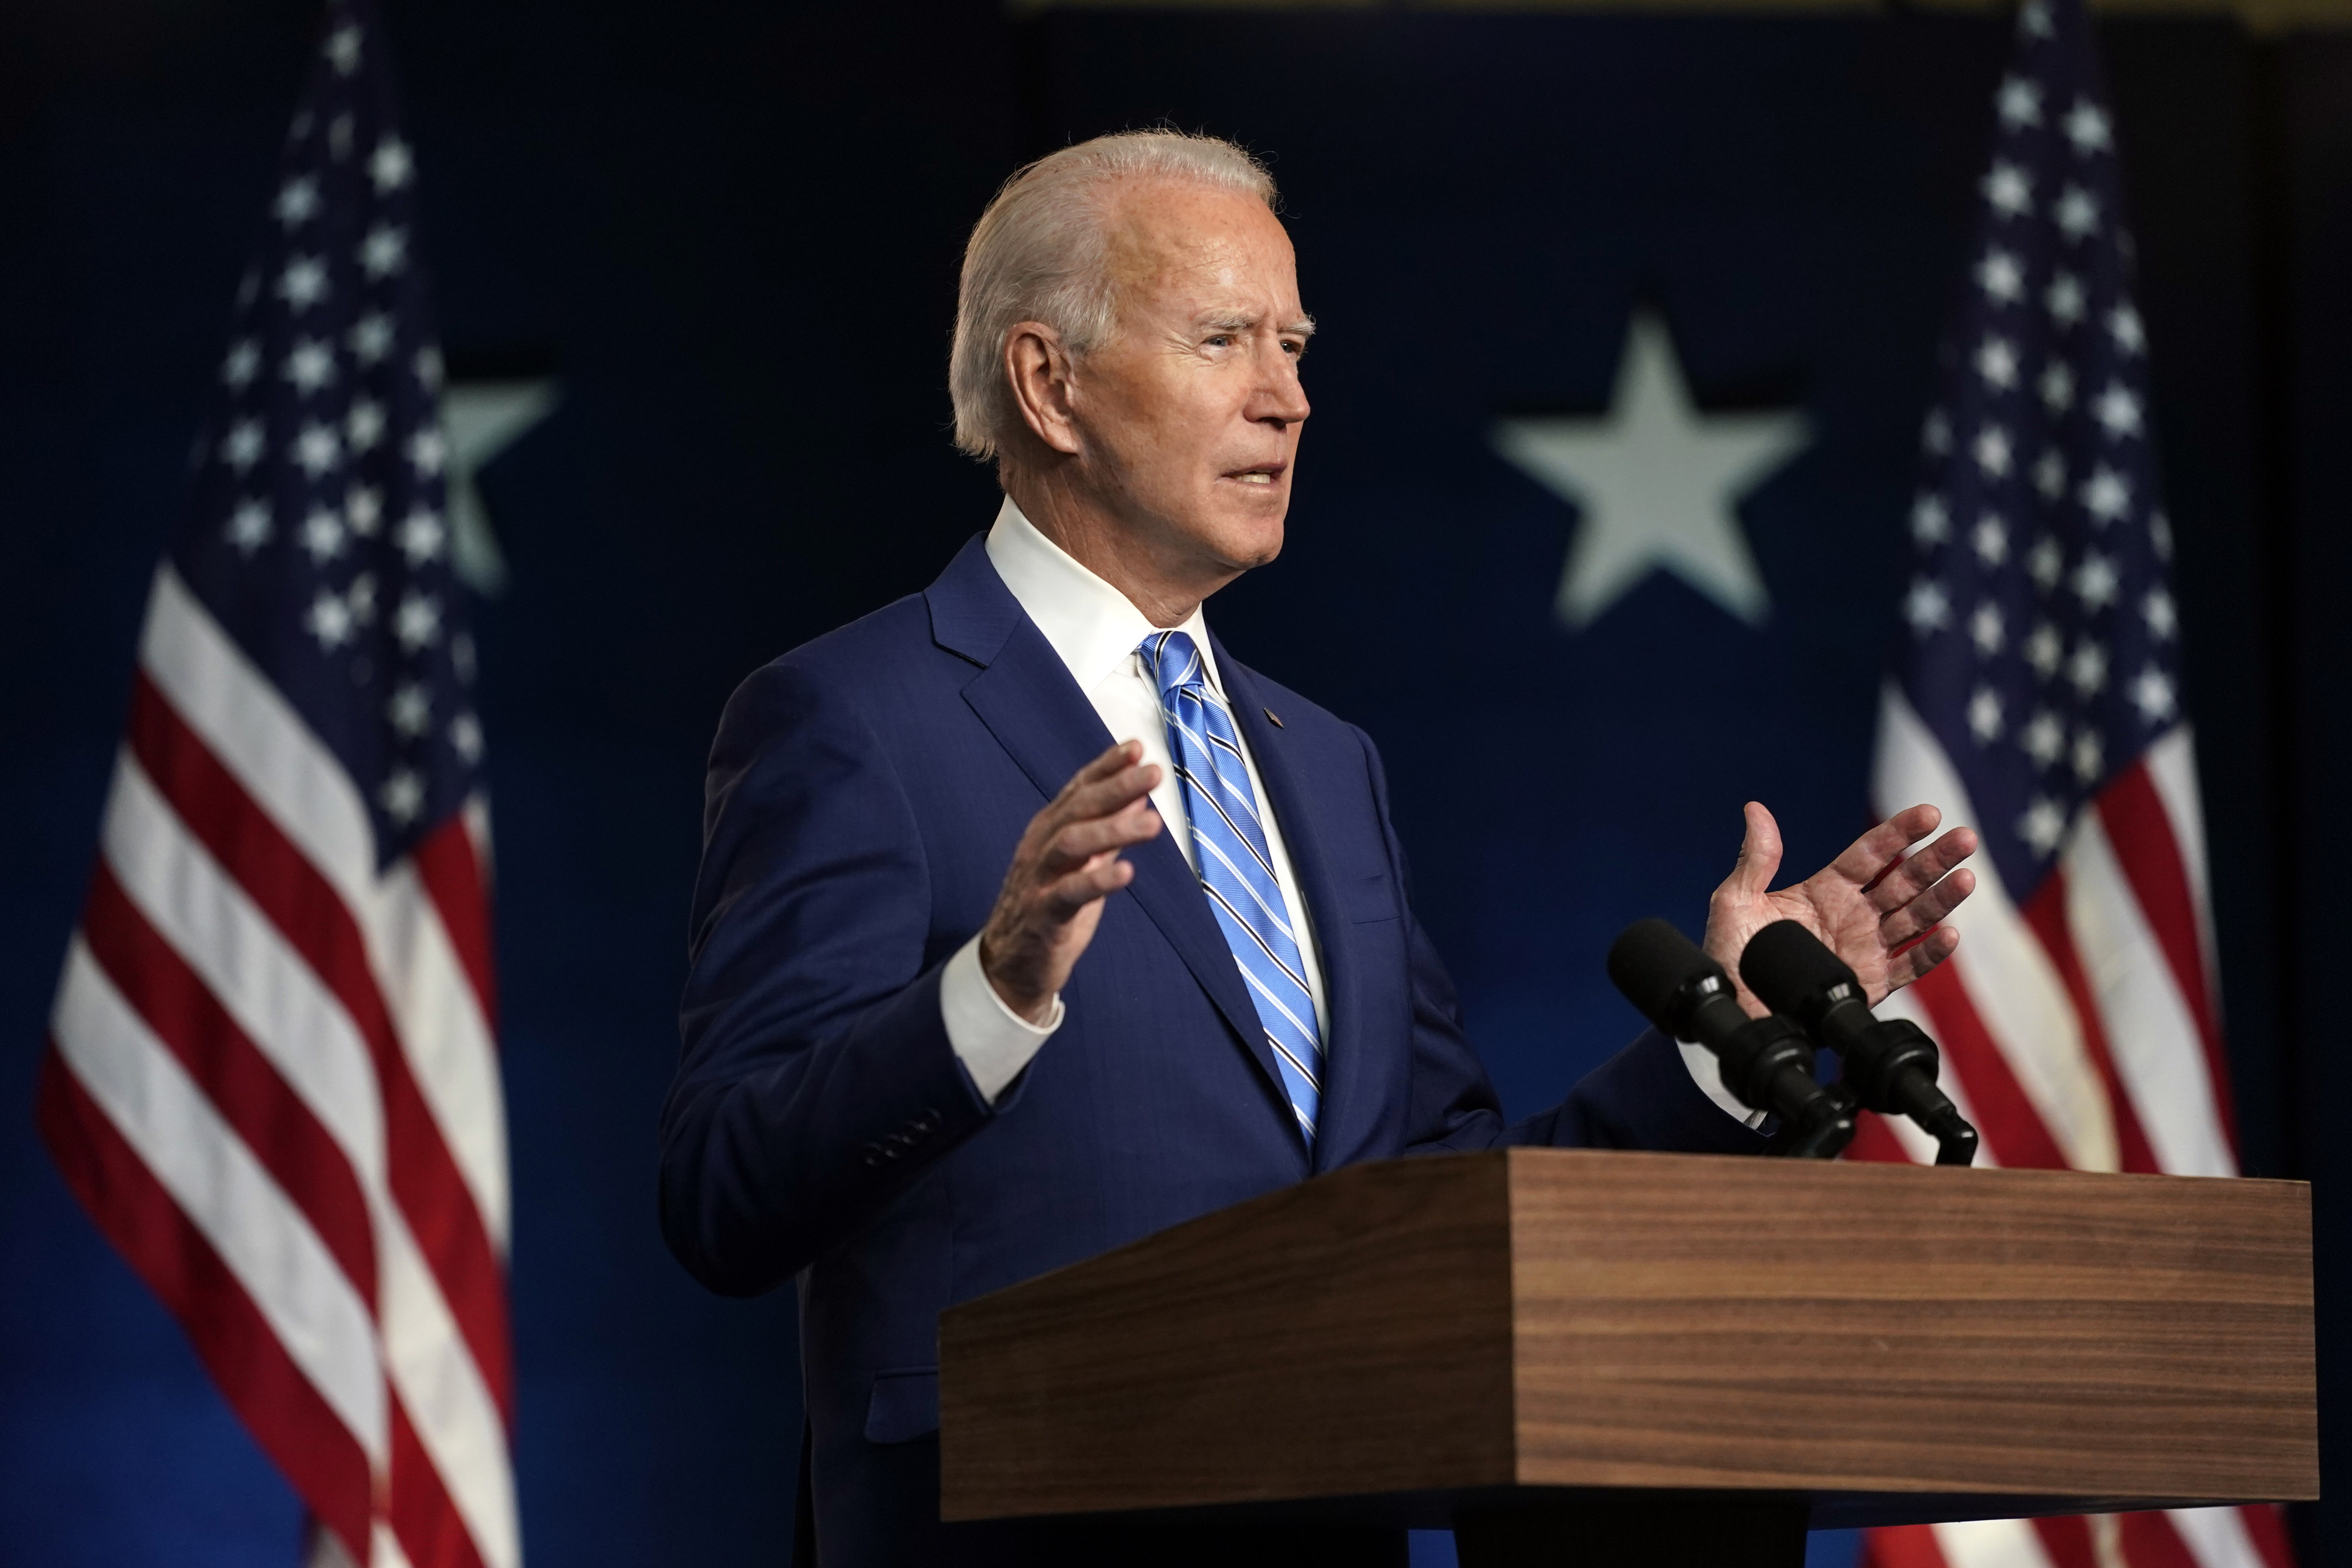 Democratic presidential candidate Joe Biden speaks Wednesday in Wilmington, Del.